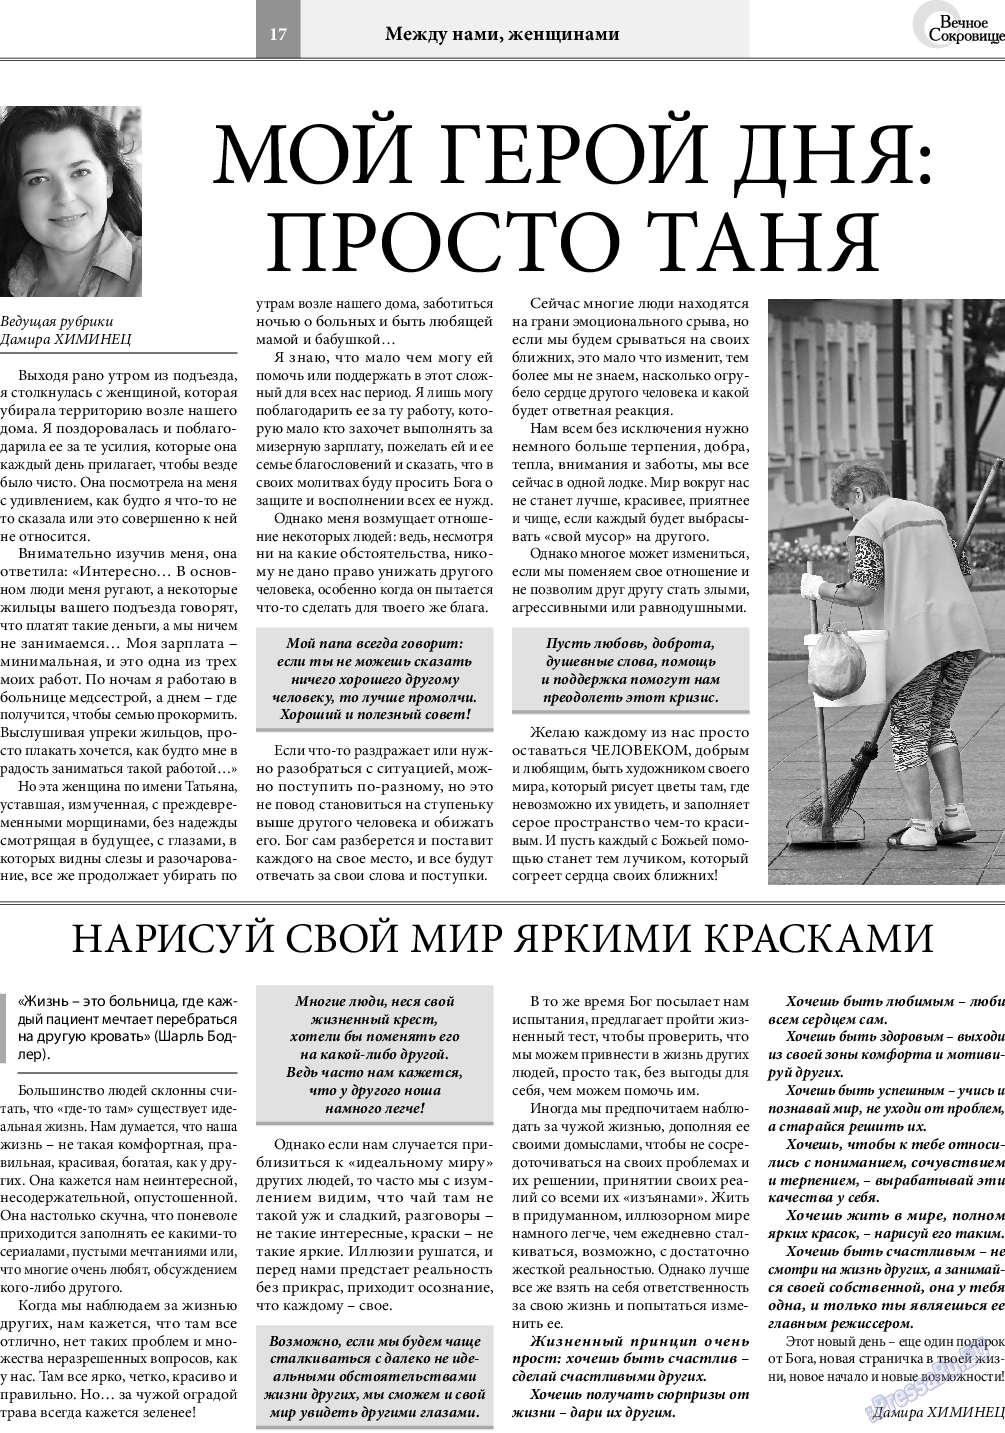 Вечное сокровище, газета. 2020 №4 стр.17